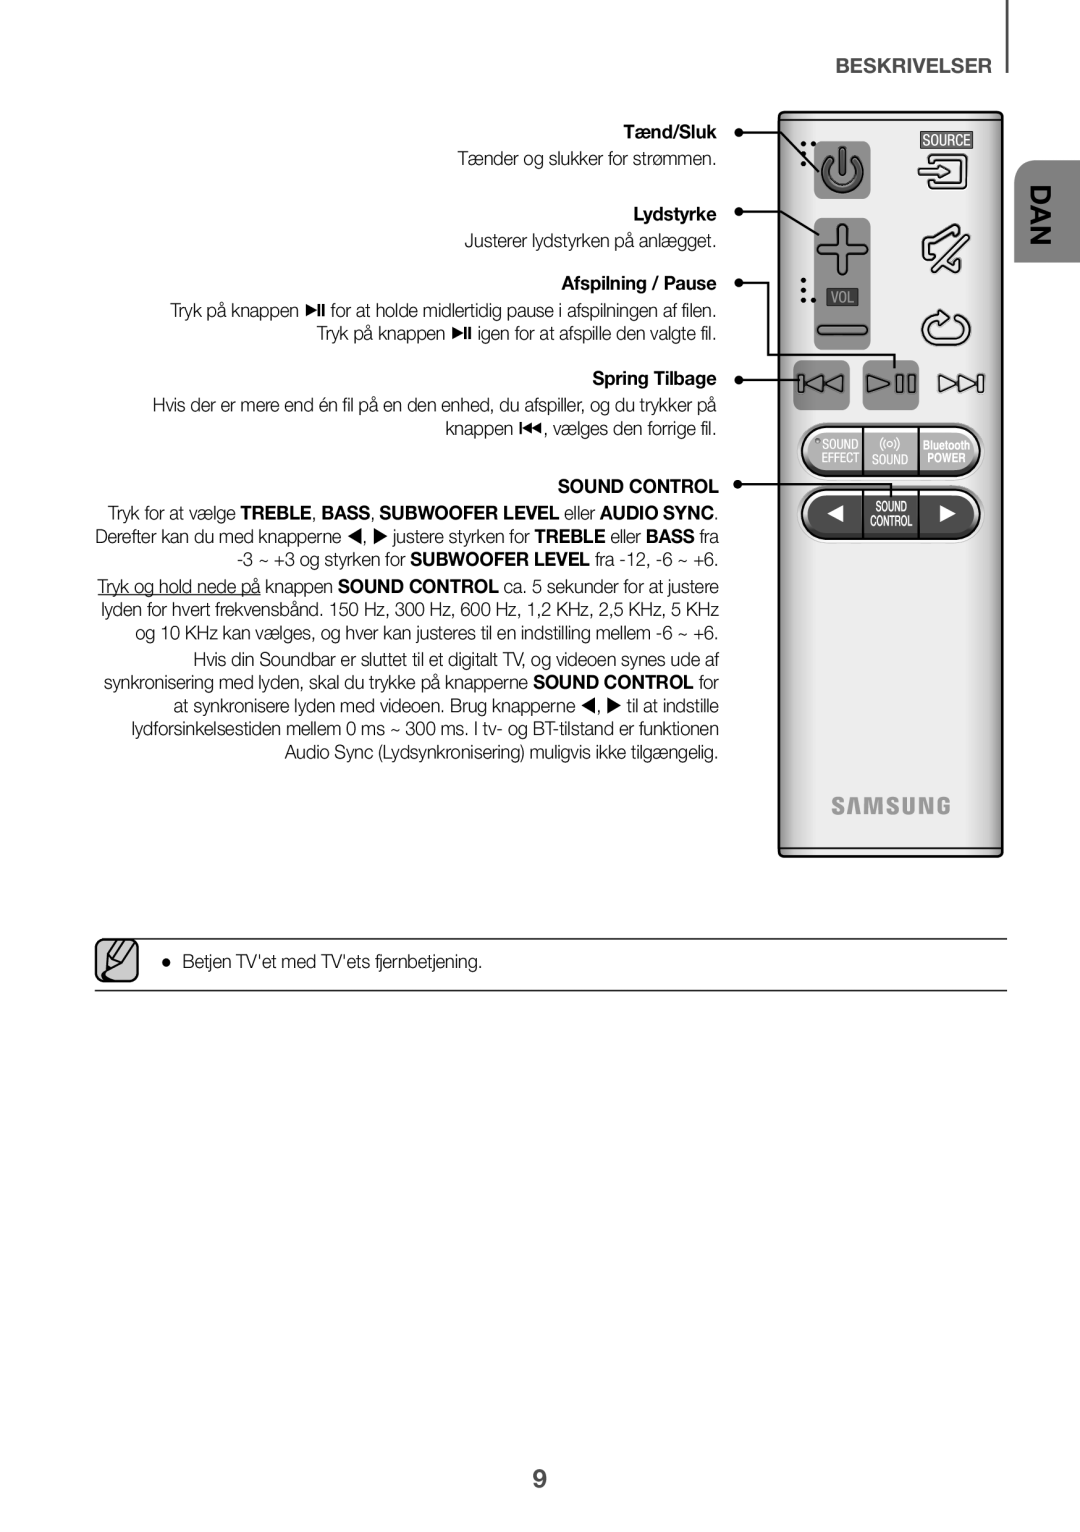 Samsung HW-K660/XE, HW-K651/EN beskrivelser, Tænd/Sluk, Lydstyrke, Tryk på knappen pigen for at afspille den valgte fil 